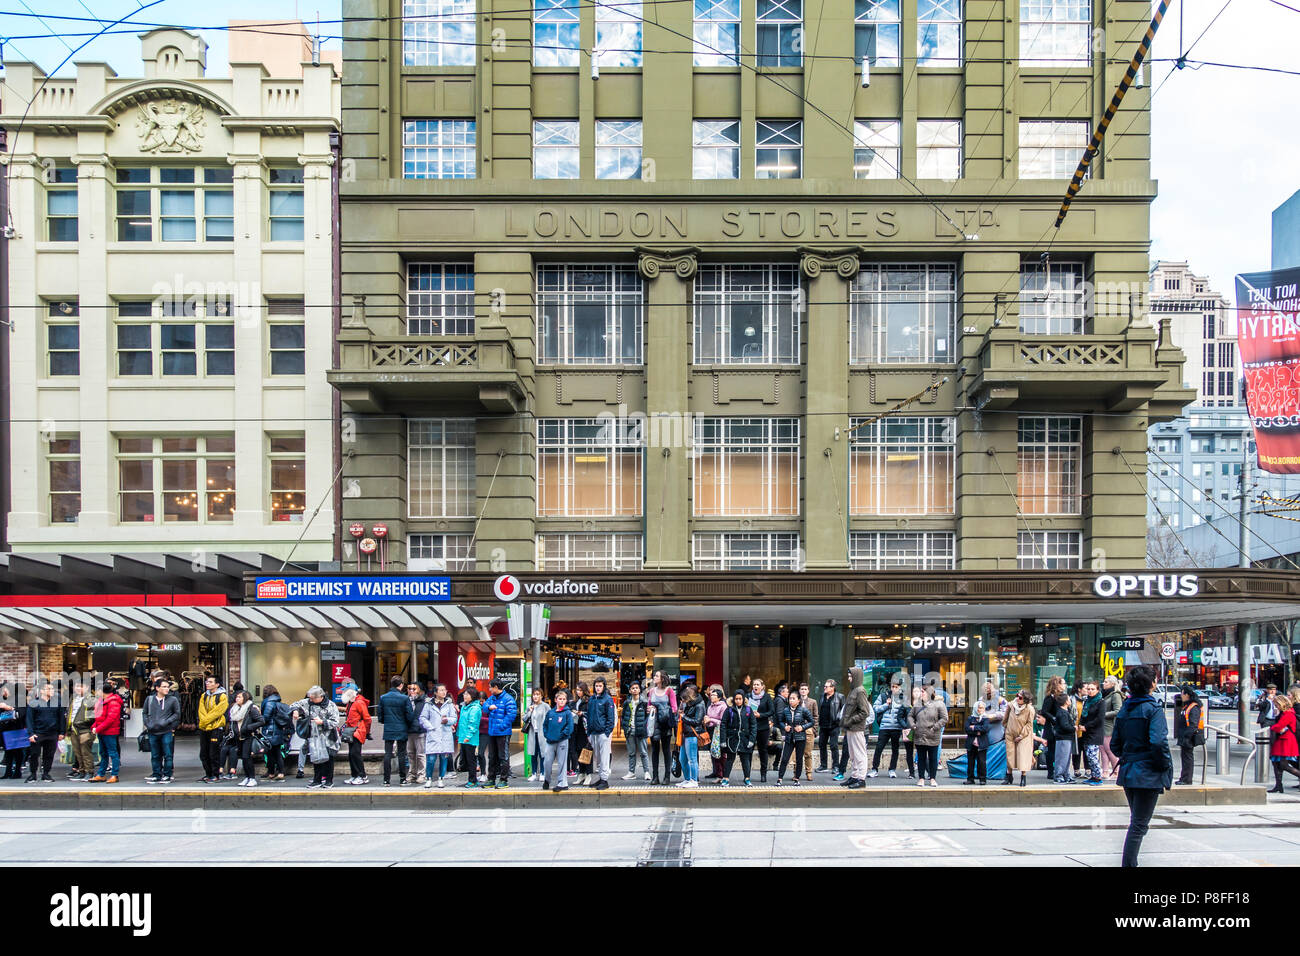 Des foules de gens qui attendent à l'arrêt de Bourke Street Mall. Ville de Melbourne, Victoria Australie. Banque D'Images